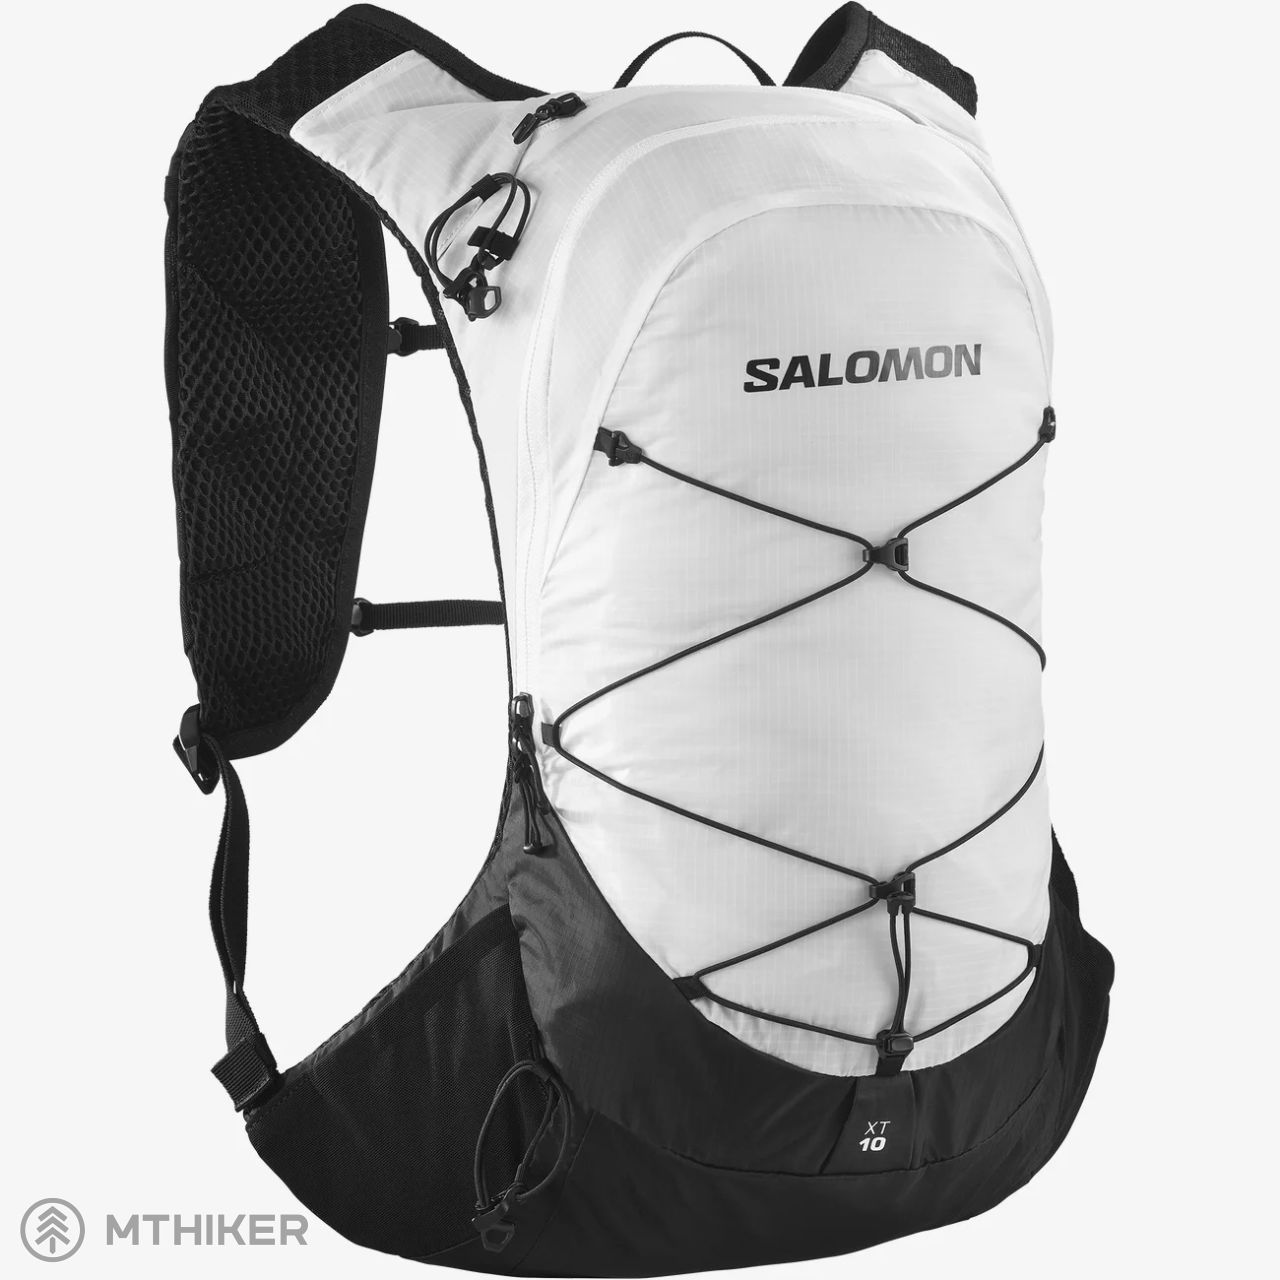 Salomon XT 10 hátizsák, 10 l, fehér/fekete